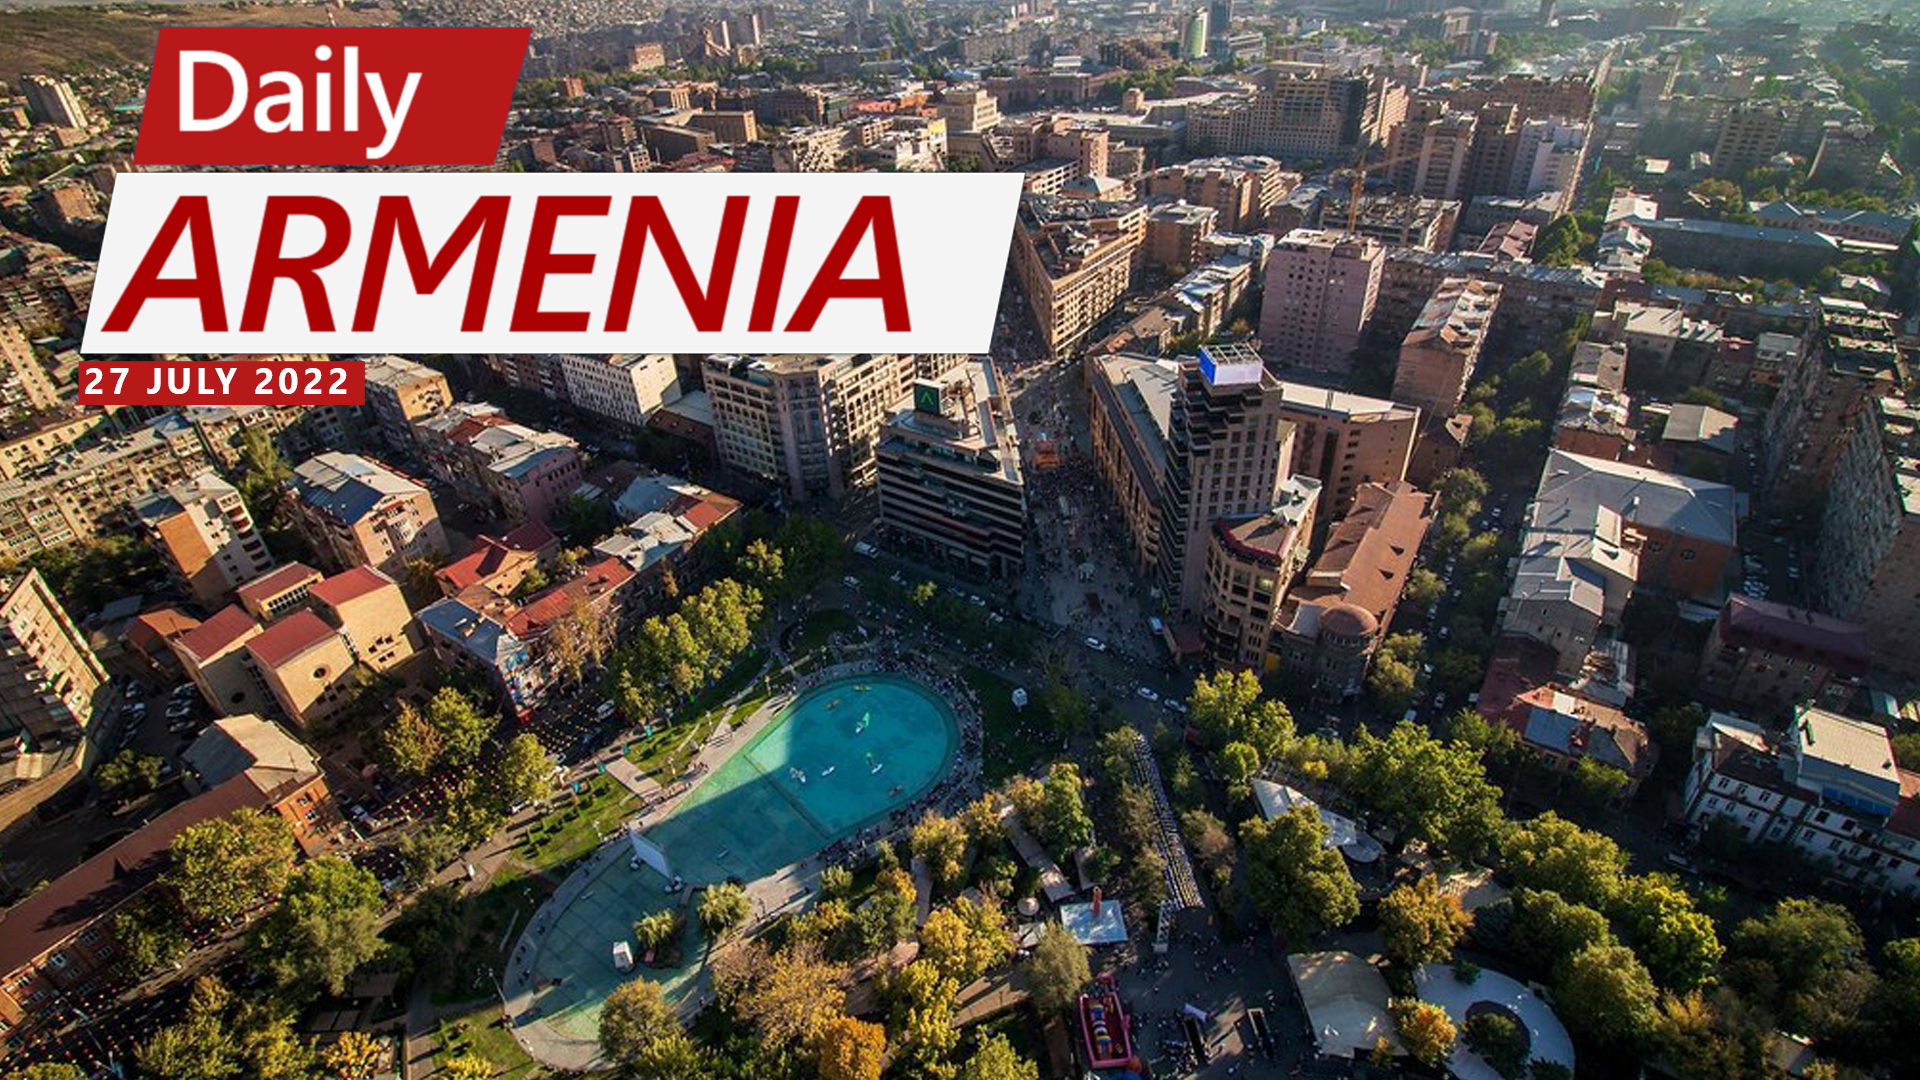 Property prices in Armenia skyrocket